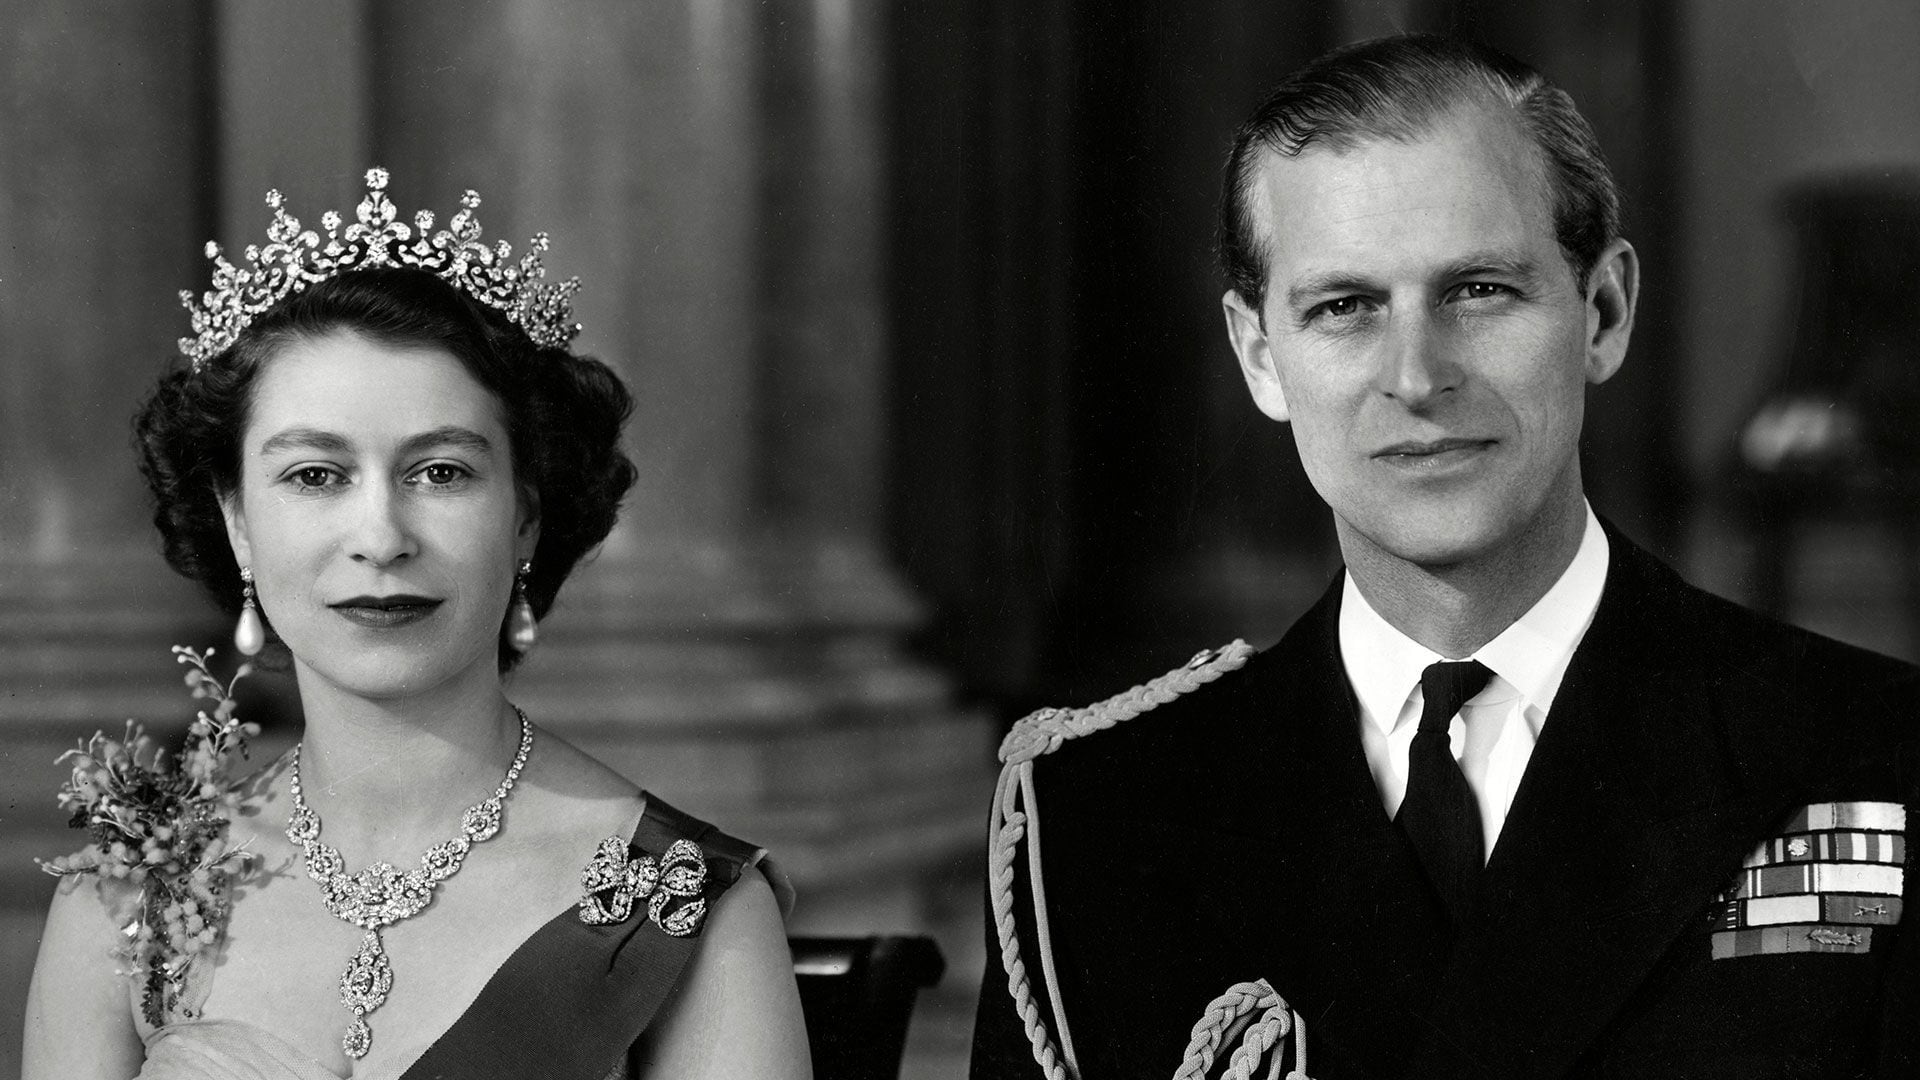 La reina Isabel II y el príncipe Felipe, duque de Edimburgo, fotografiados juntos en la gran entrada del Palacio de Buckingham en 1954